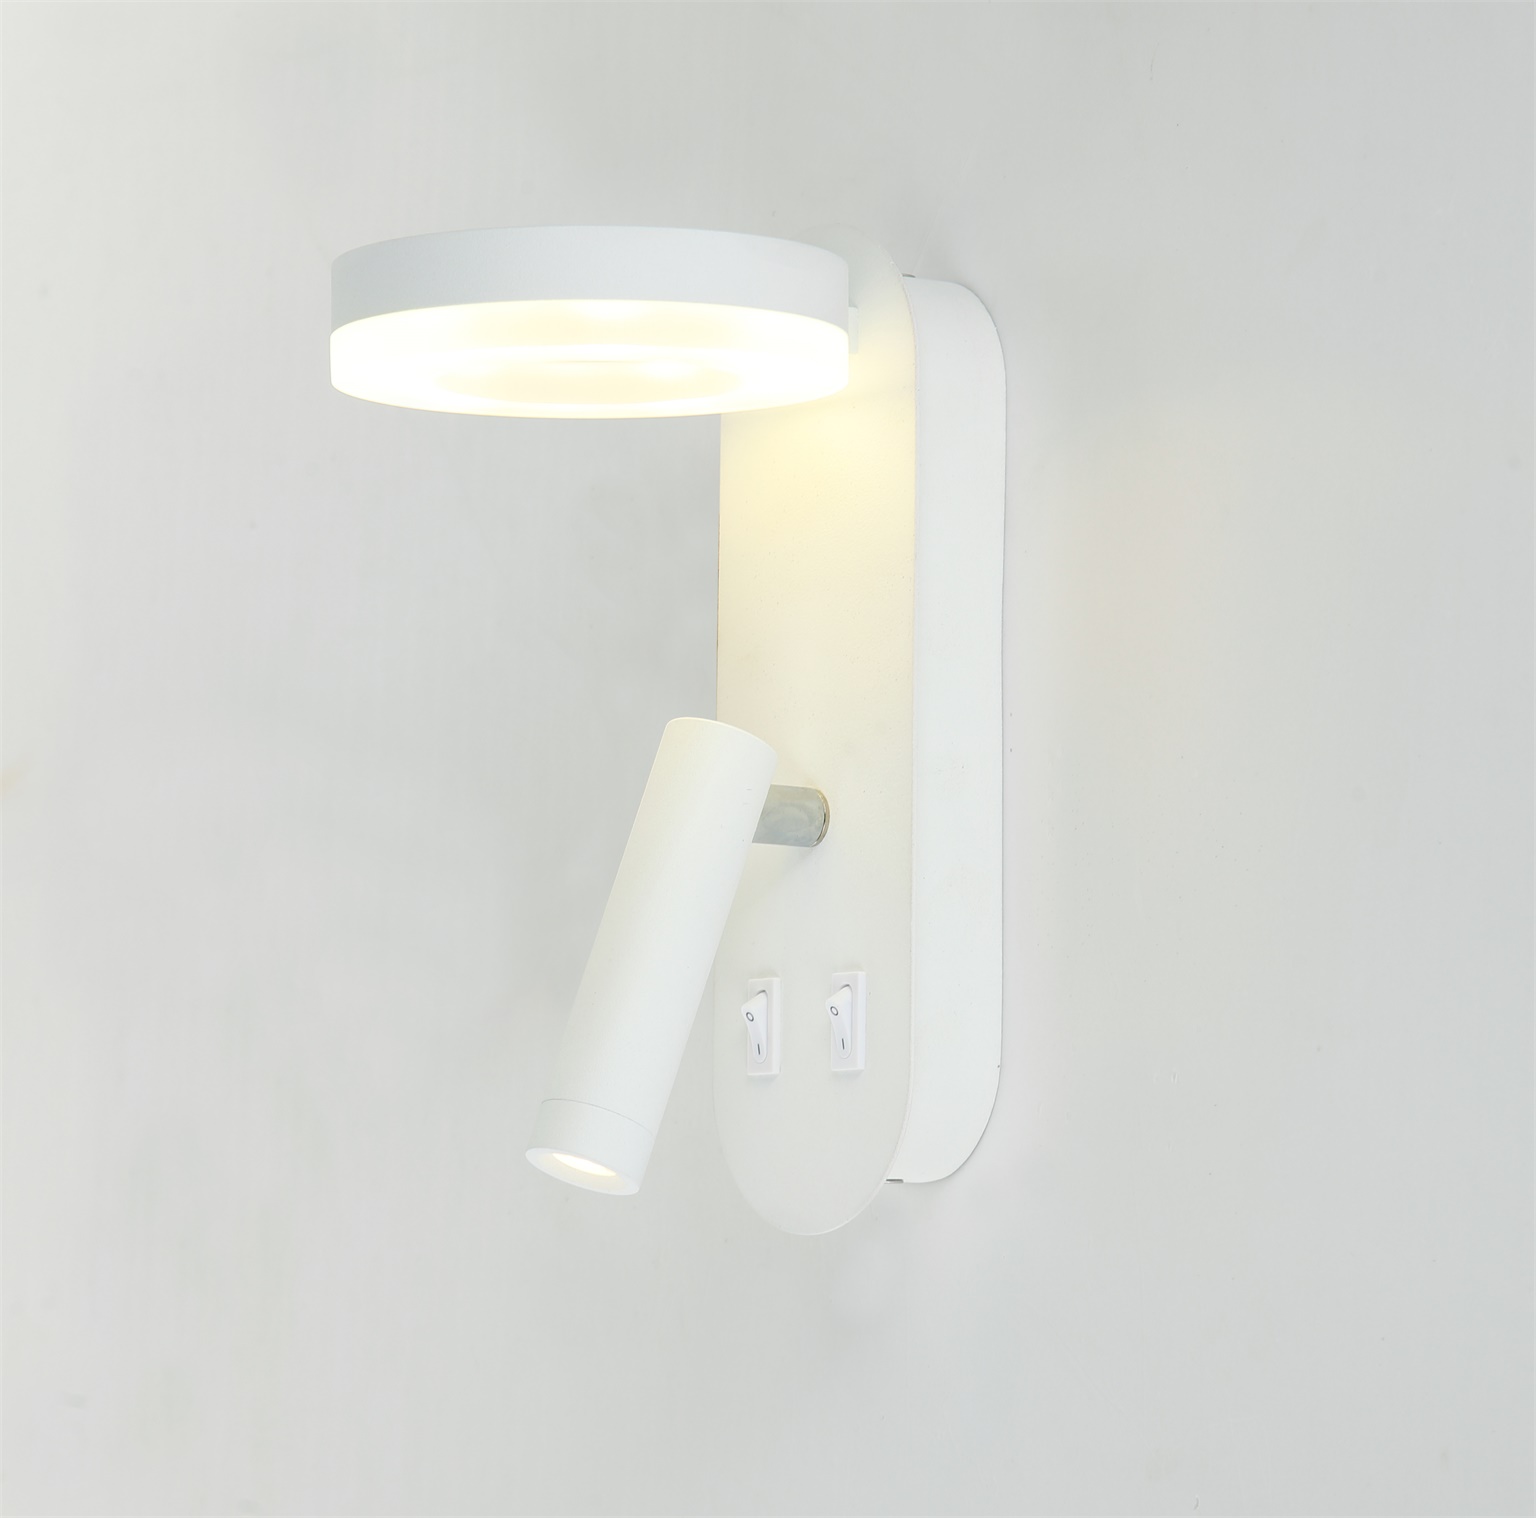 Saintly 2c bathroom wall lights manufacturer for bedroom-1